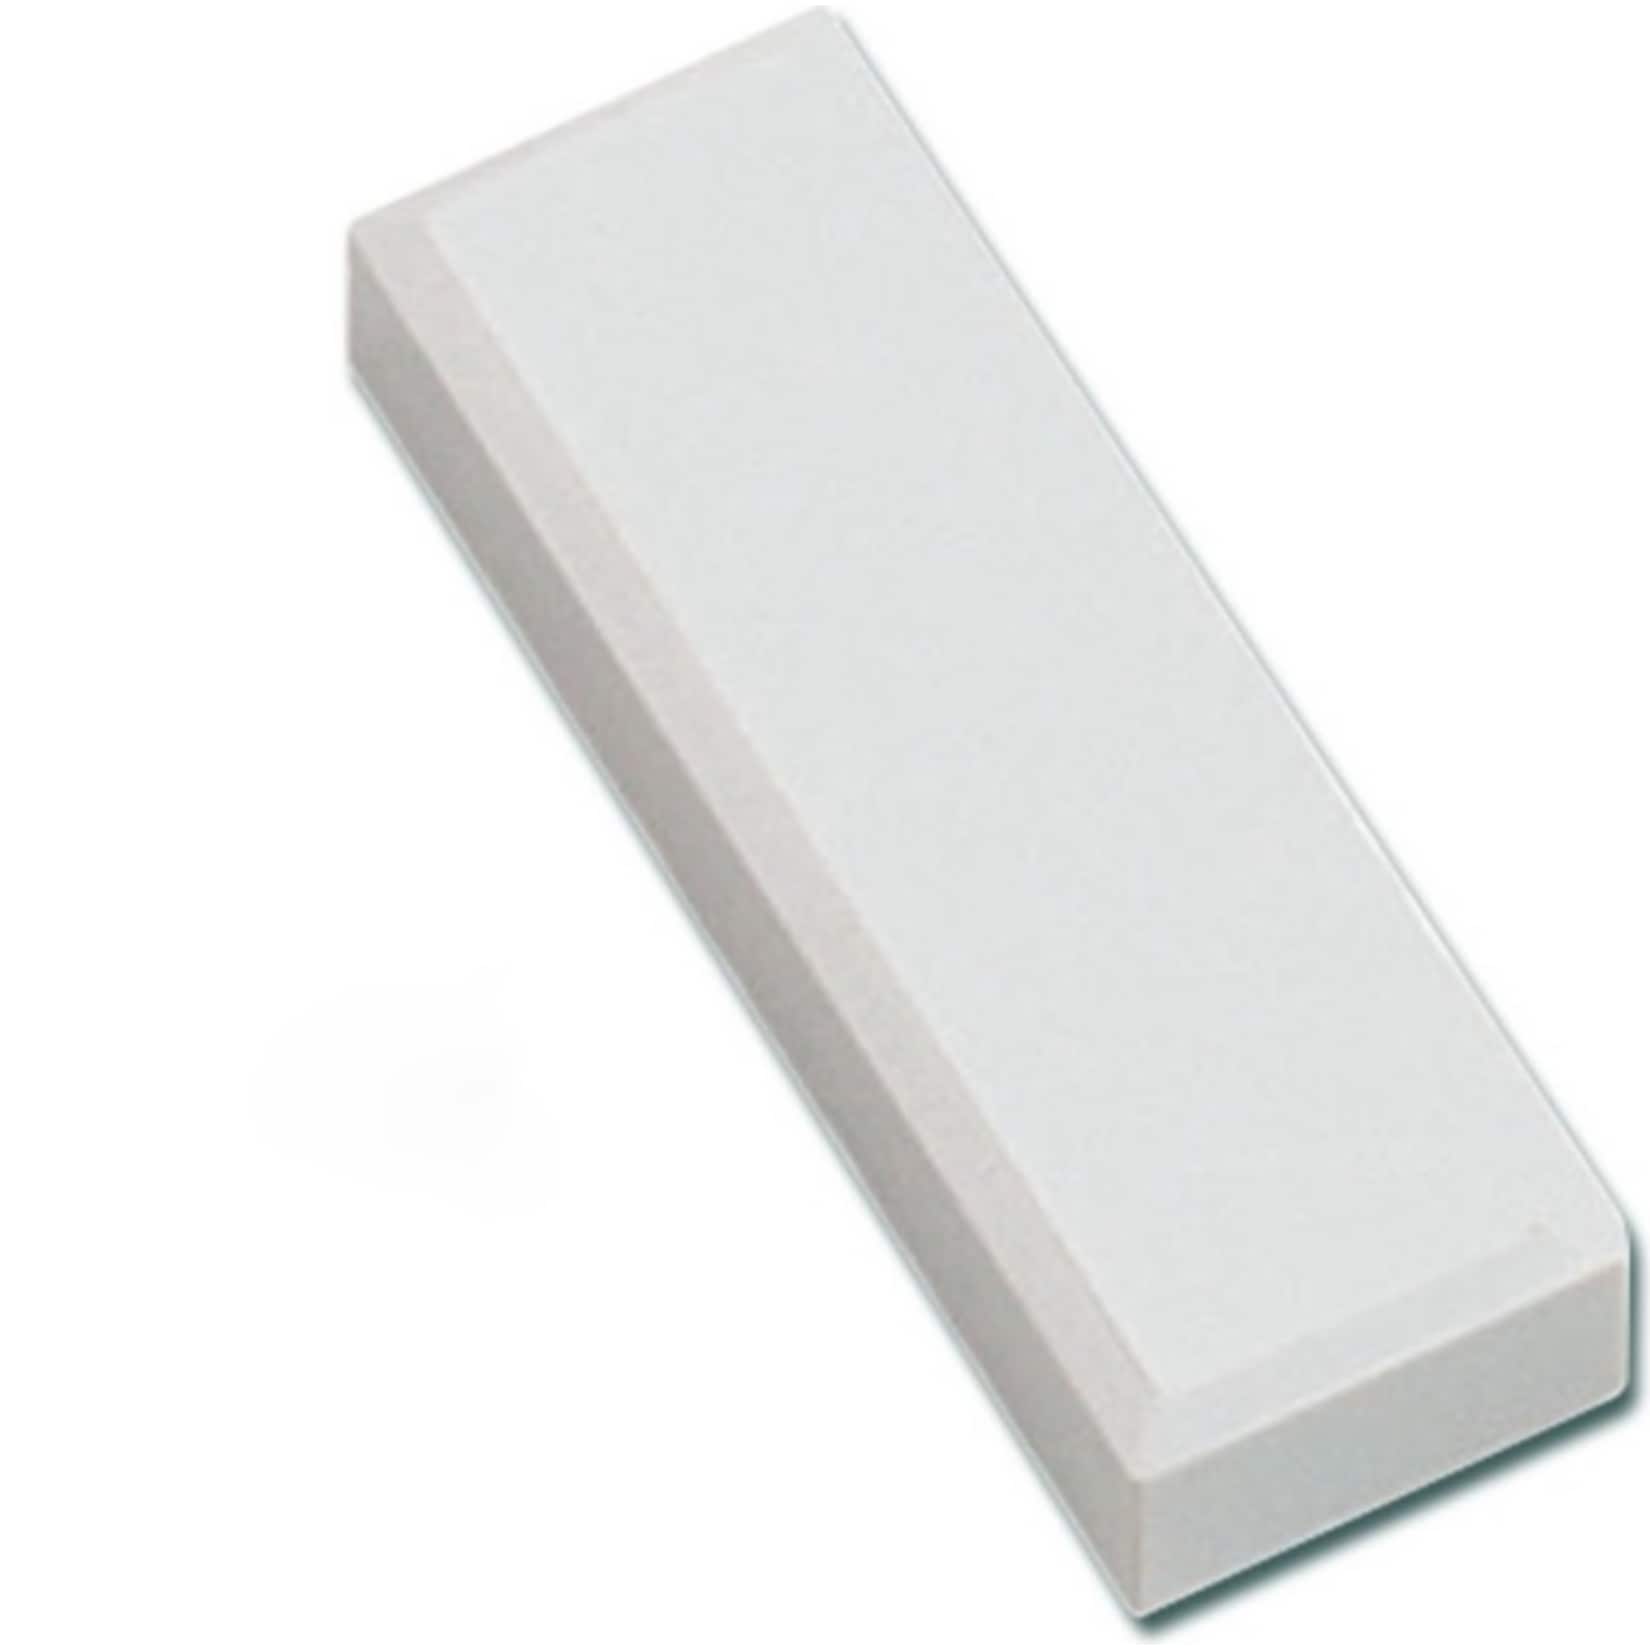 MAUL Facetterand-Magnet MAULpro, 53 x 18 x 10 mm, 1 kg Haftkraft, 20 St./Set - weiß